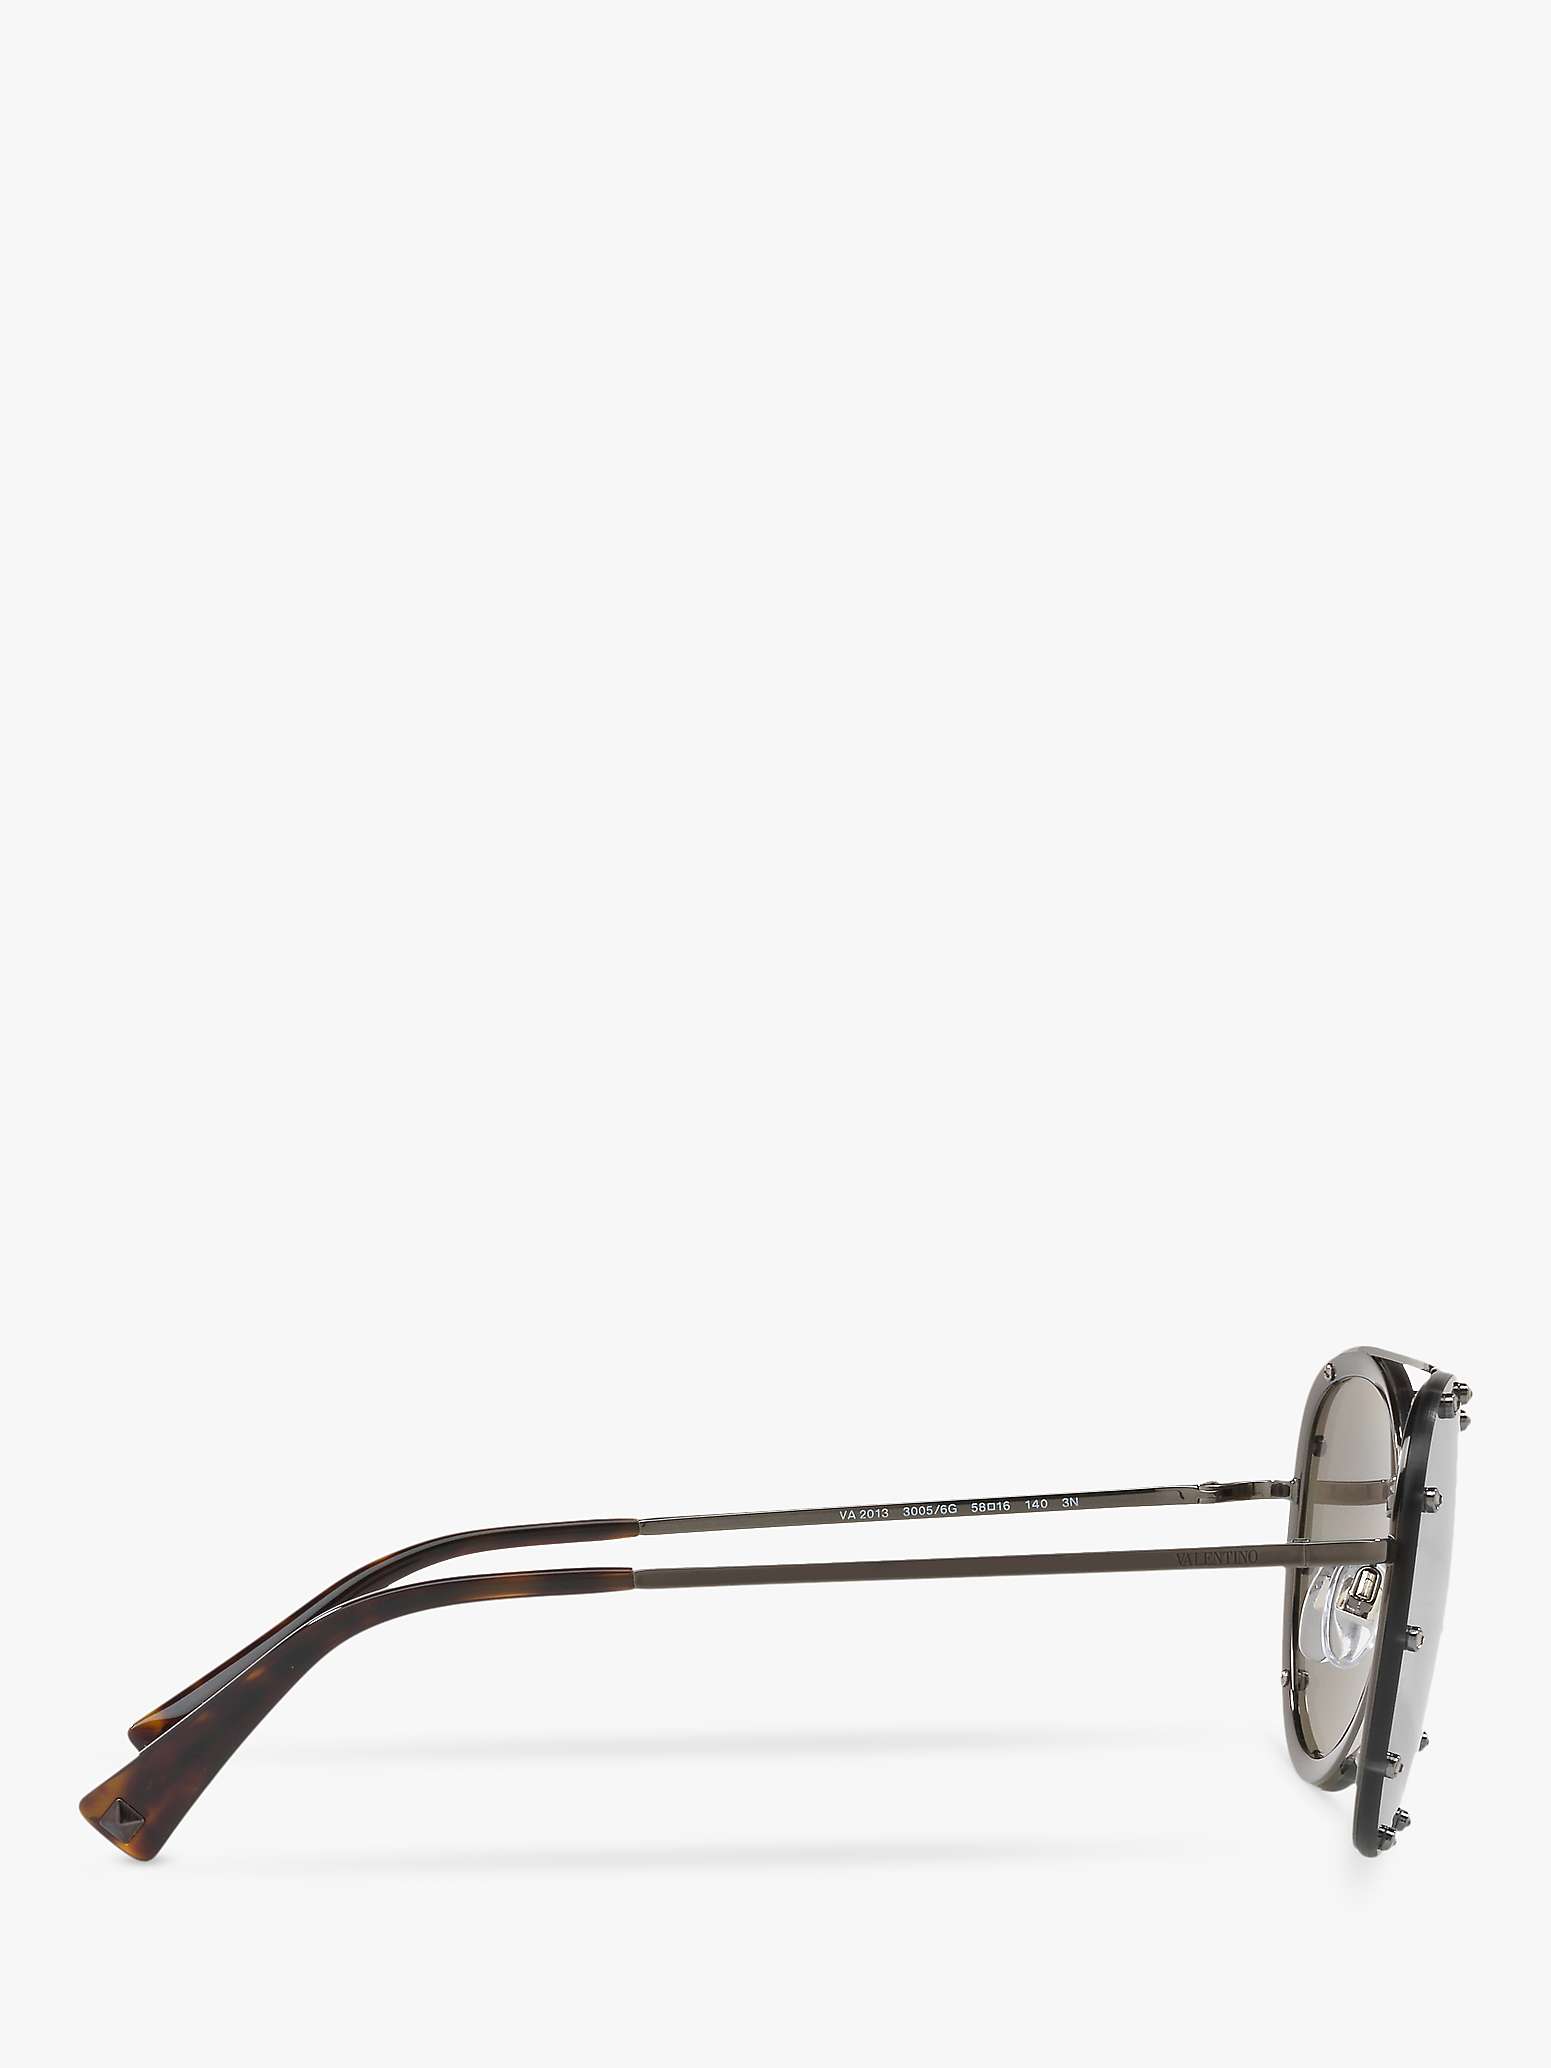 Buy Valentino VA2013 Women's Aviator Sunglasses Online at johnlewis.com